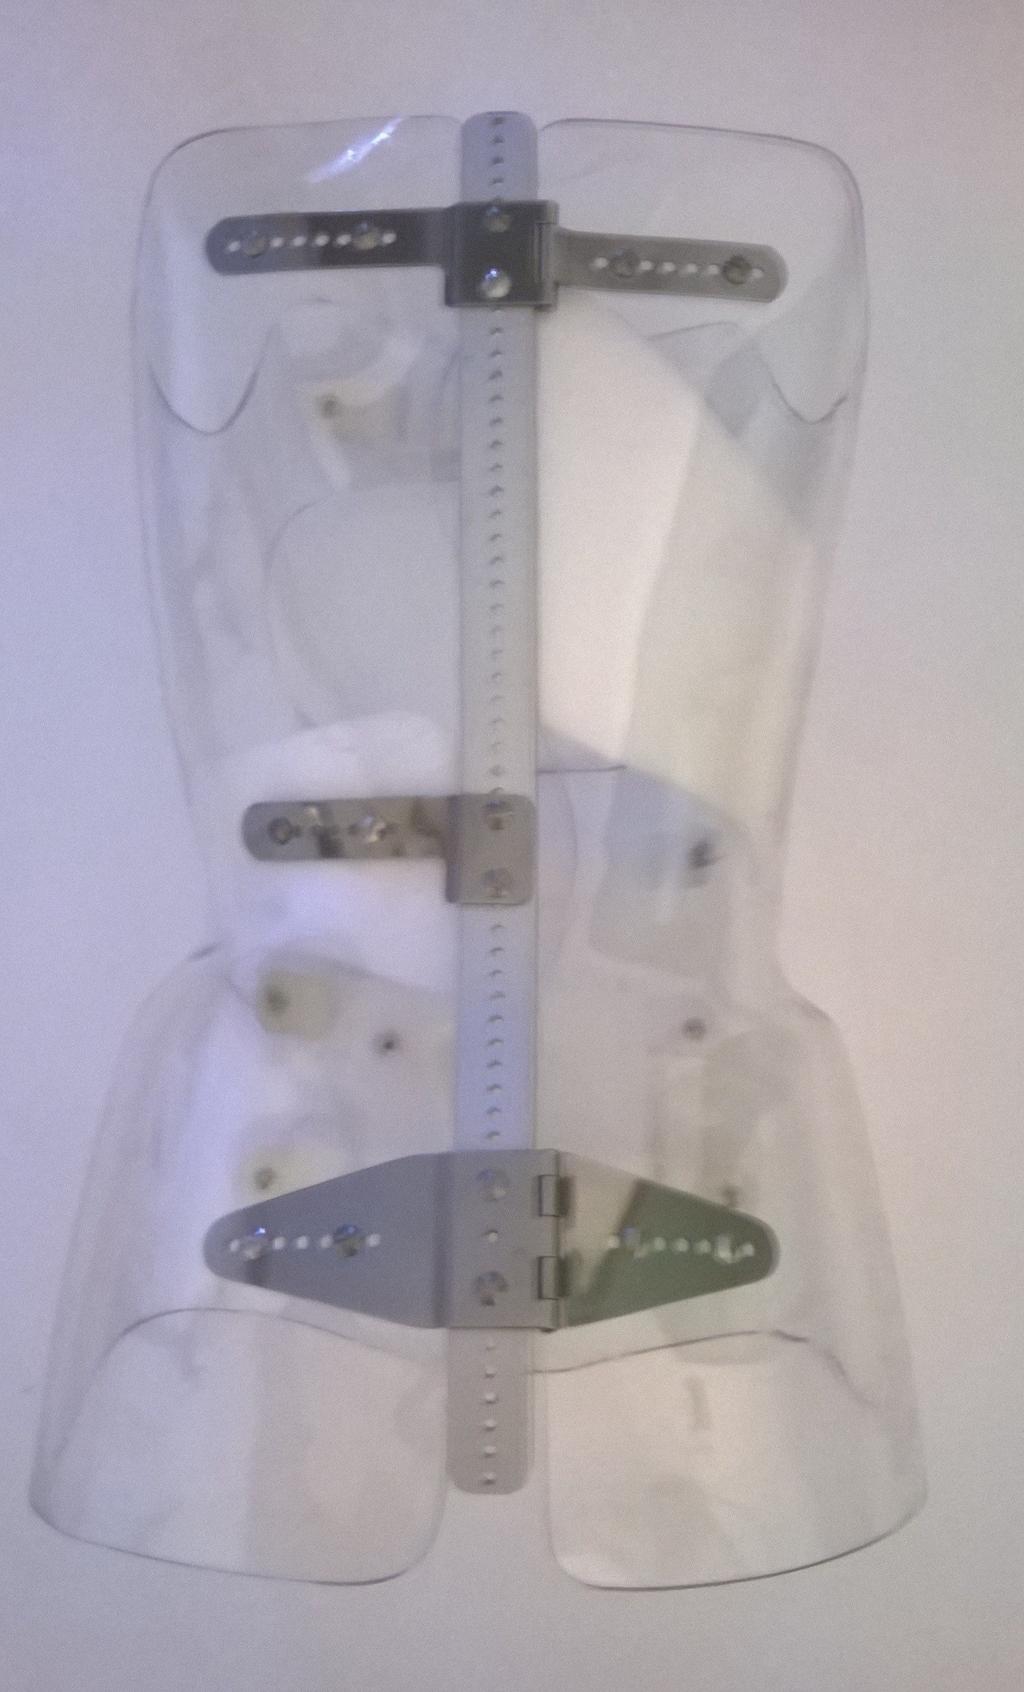 Il corsetto è costrituito in due ampie valve fortemente connesse